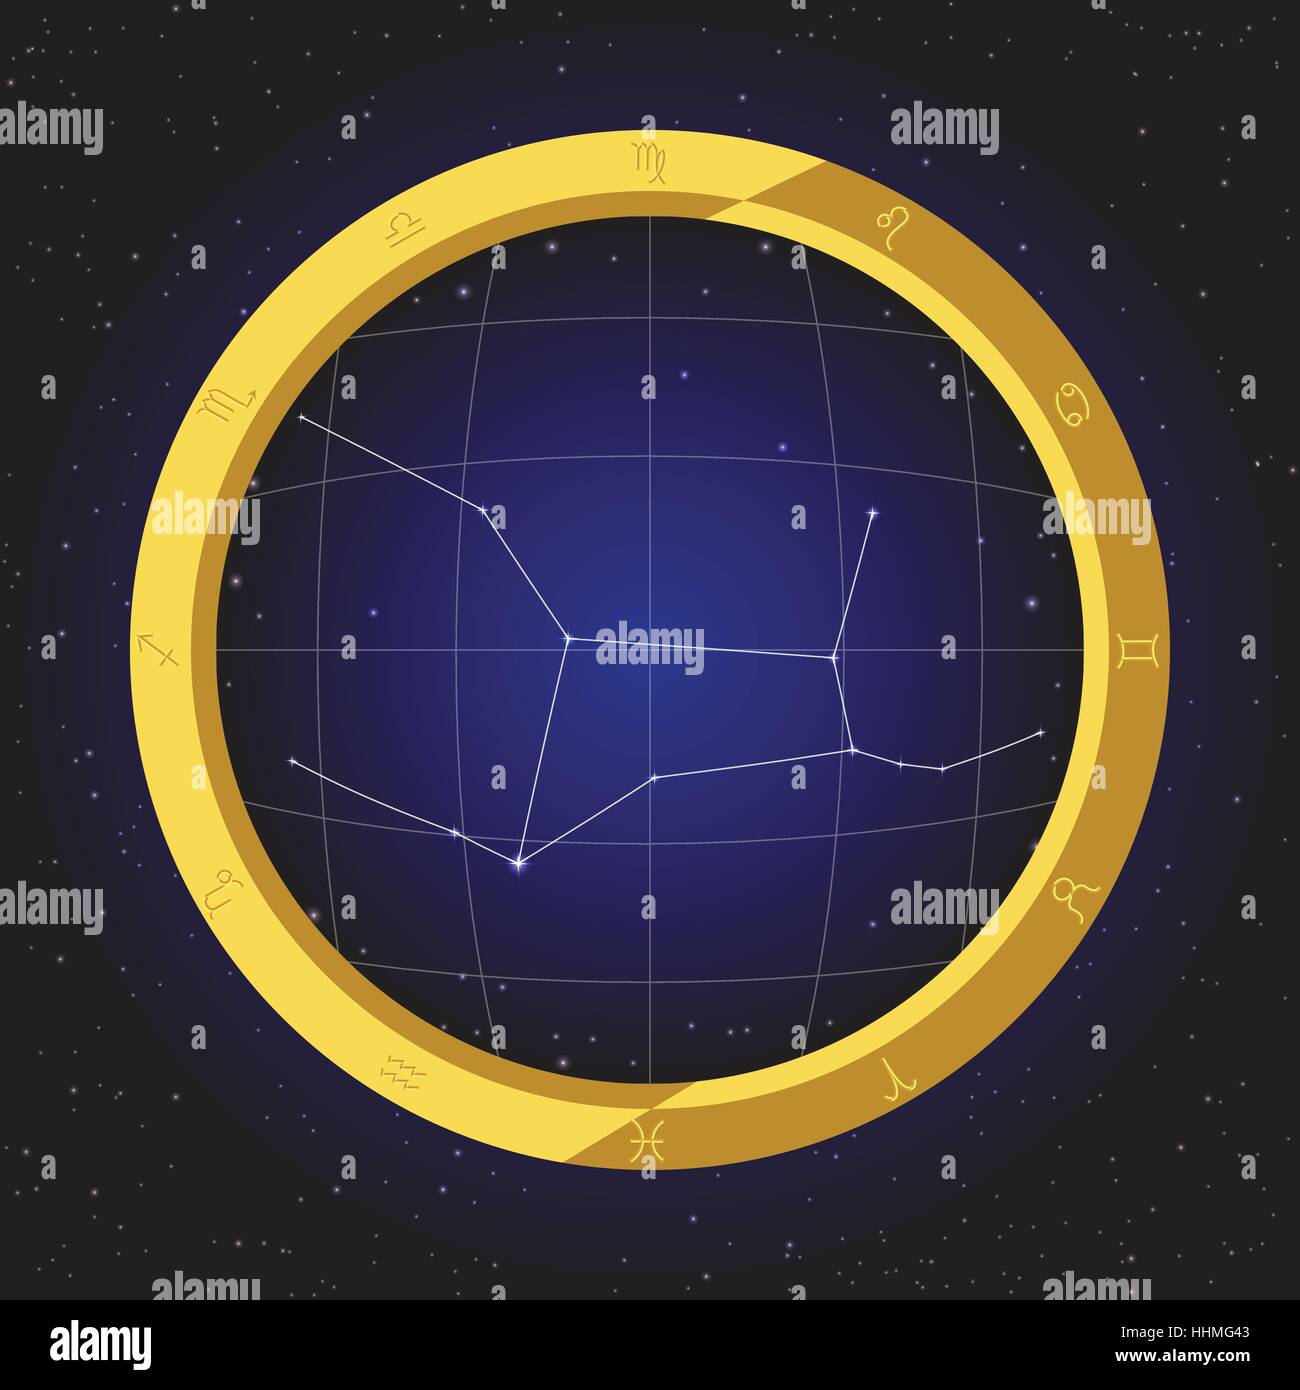 Afsnijden Sluimeren mixer virgo star horoscope zodiac in fish eye telescope golden ring frame with  cosmos background Stock Vector Image & Art - Alamy